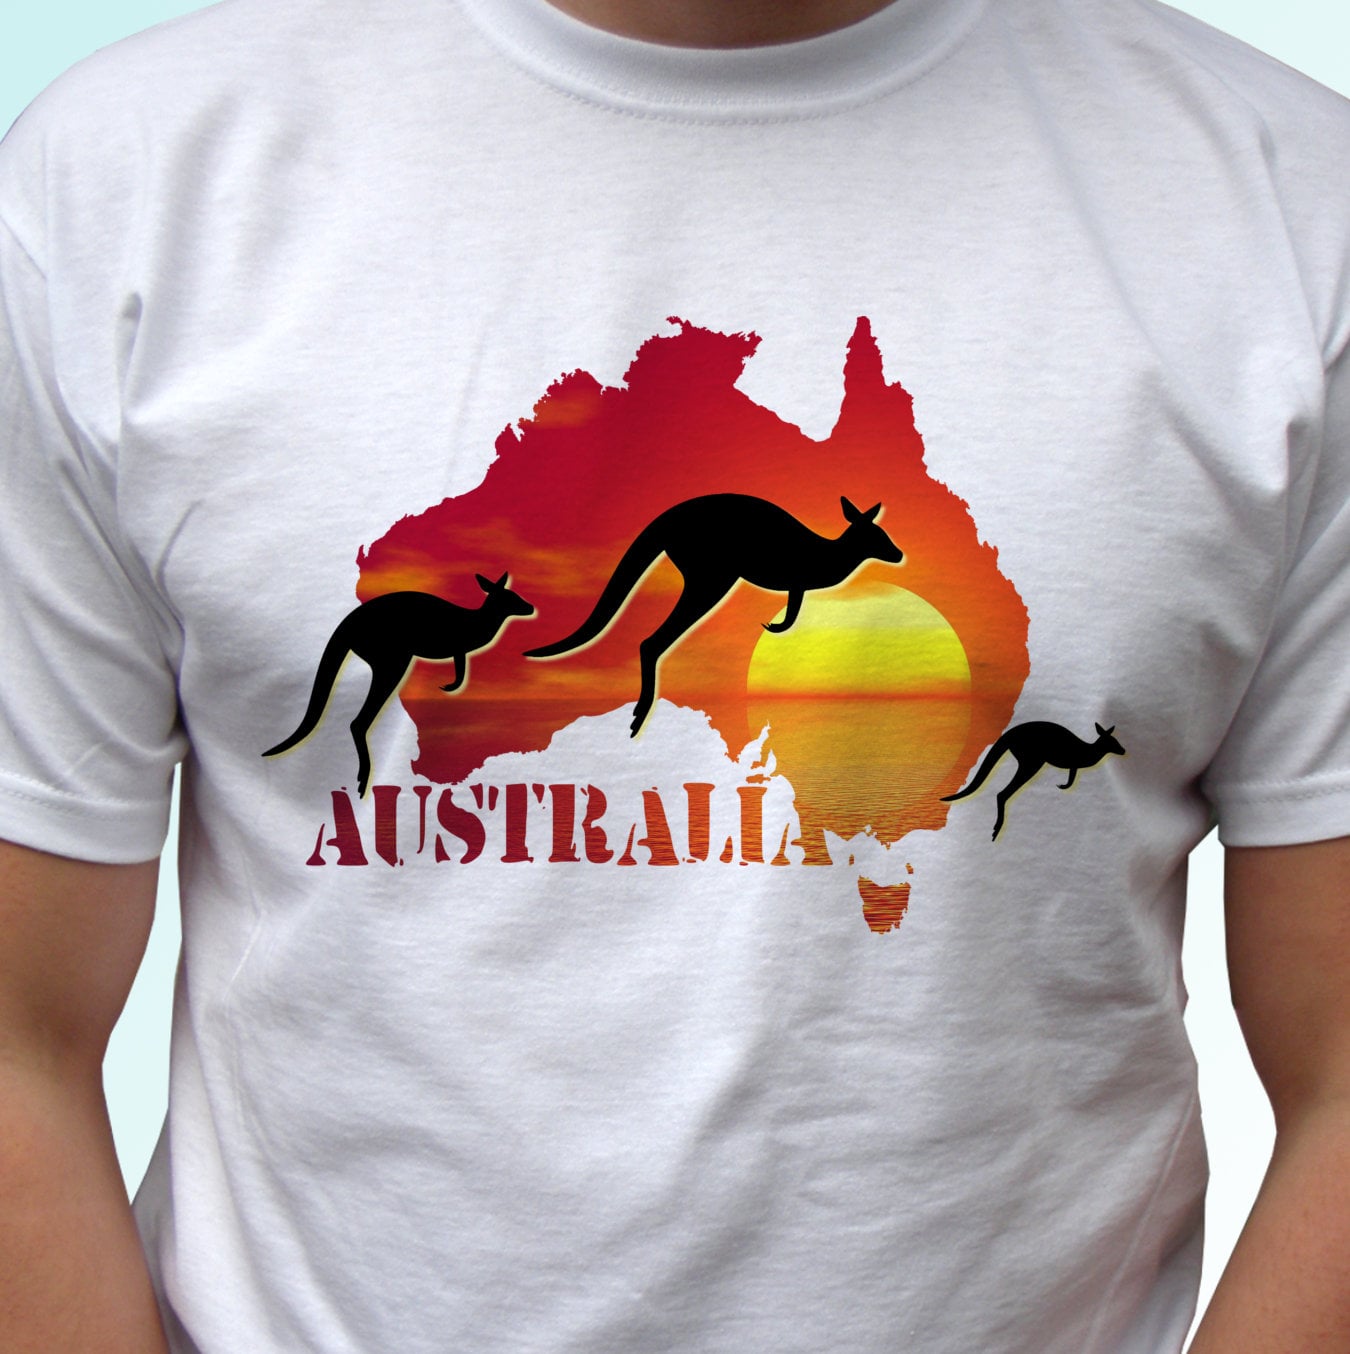 Australia Kangaroo White Shirt Top Tee Design Art - Etsy Denmark